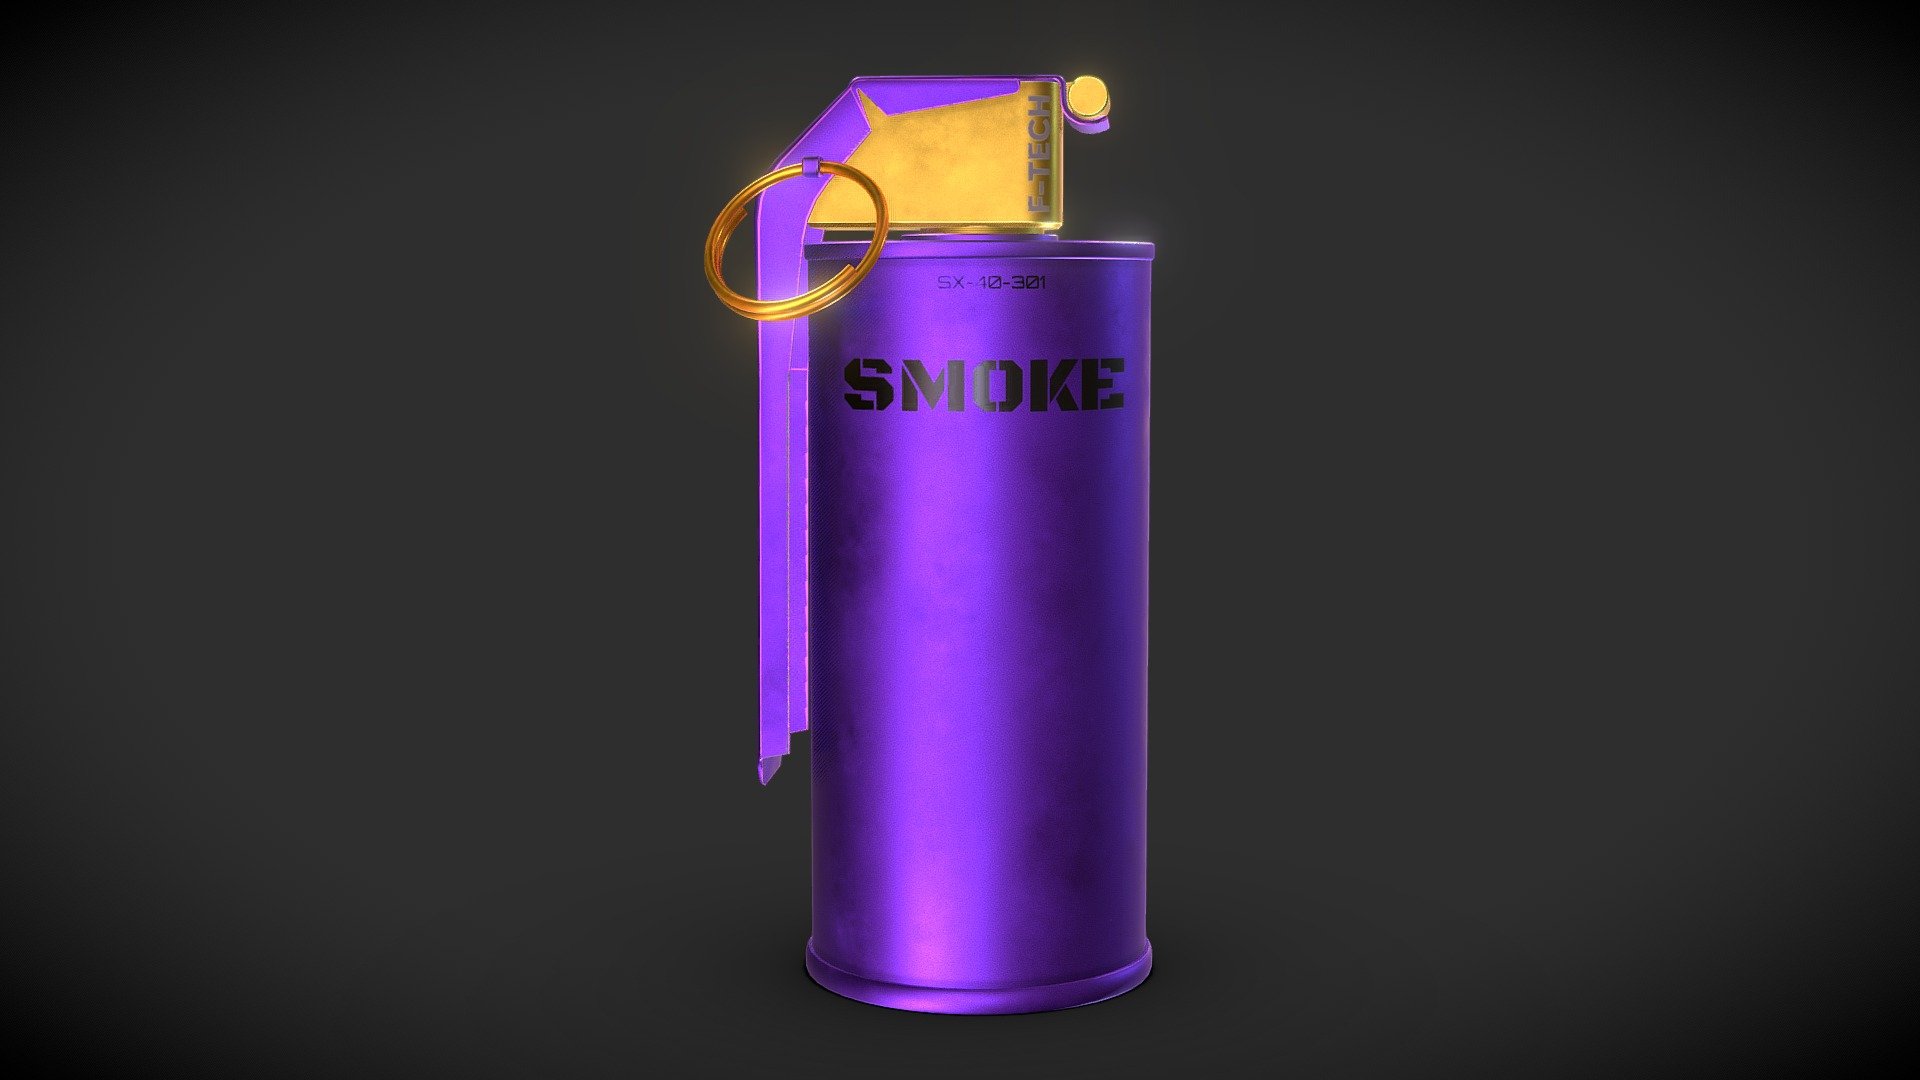 If You’d like more of those DM me at https://www.instagram.com/kj3dx/ - Modern Smoke Grenade V1 - Buy Royalty Free 3D model by KJ (@kj3dx) 3d model